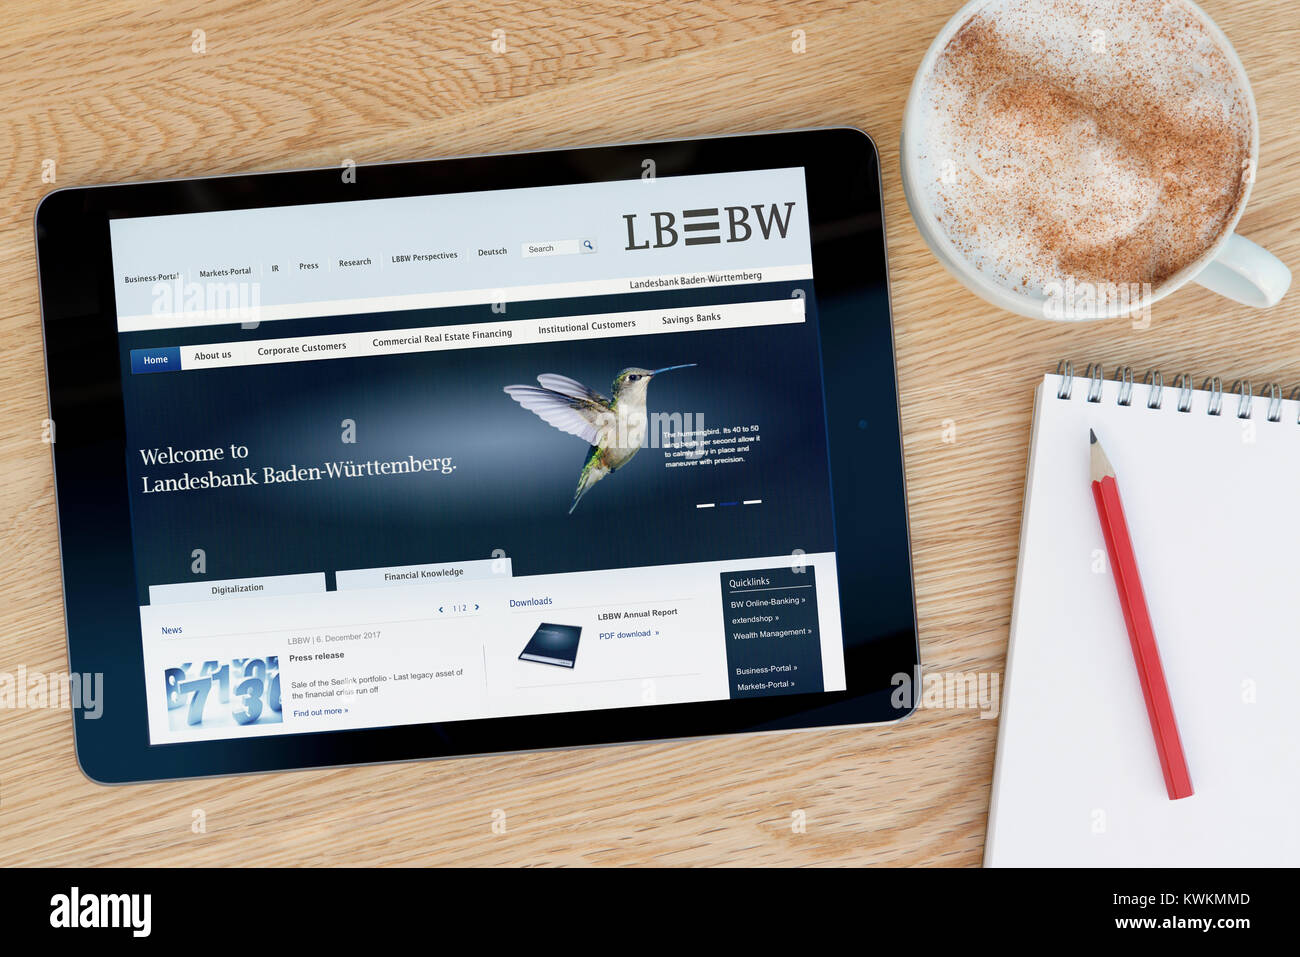 Nur der LBBW (Landesbank Baden-Württemberg) Website auf einem iPad tablet device, auf einen hölzernen Tisch neben einem Notizblock, Bleistift und Tasse Kaffee - Editorial Stockfoto